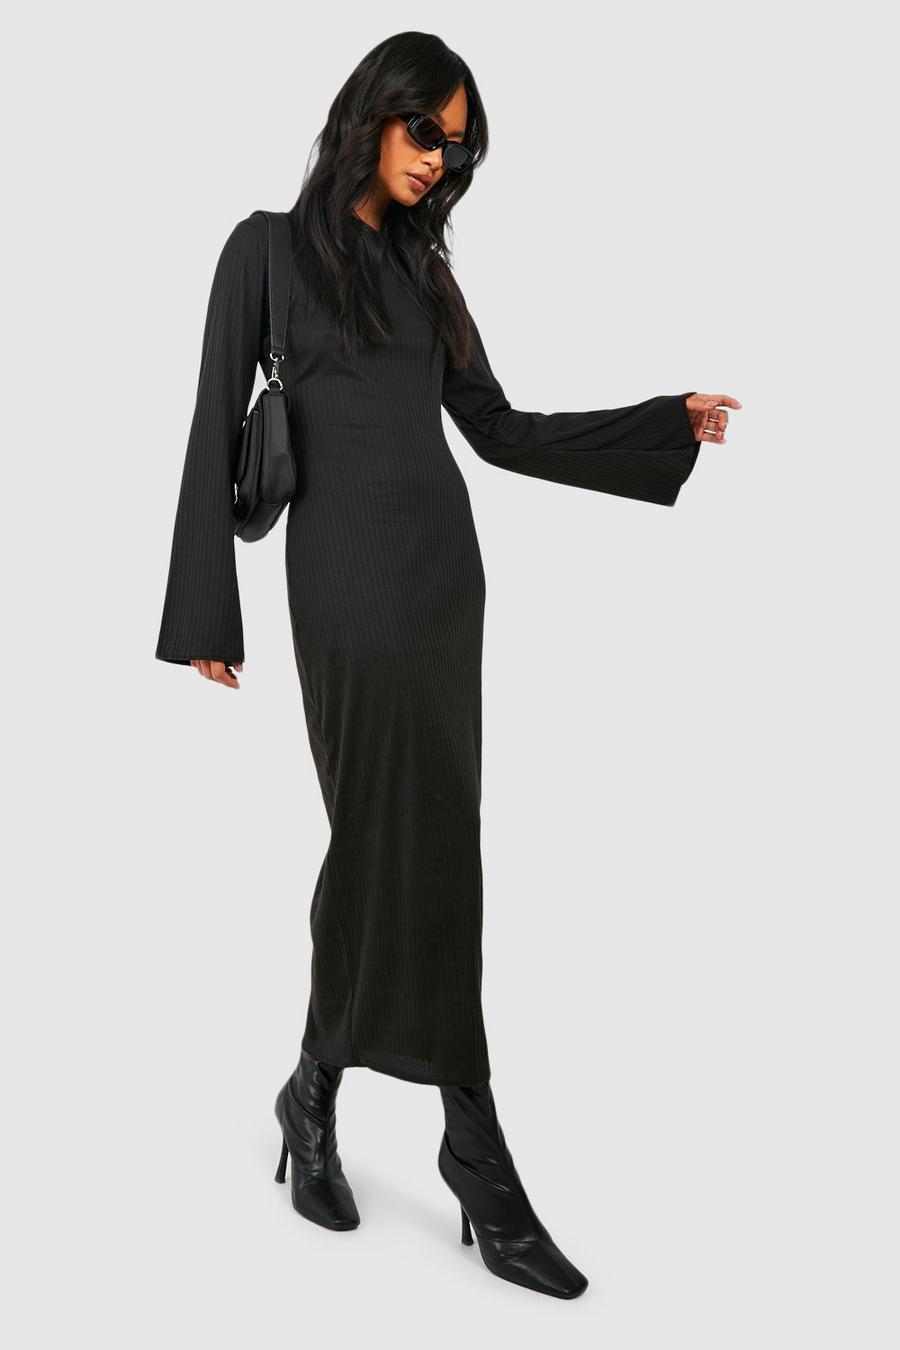 Black Rib Knit Flare Sleeve Midaxi Dress